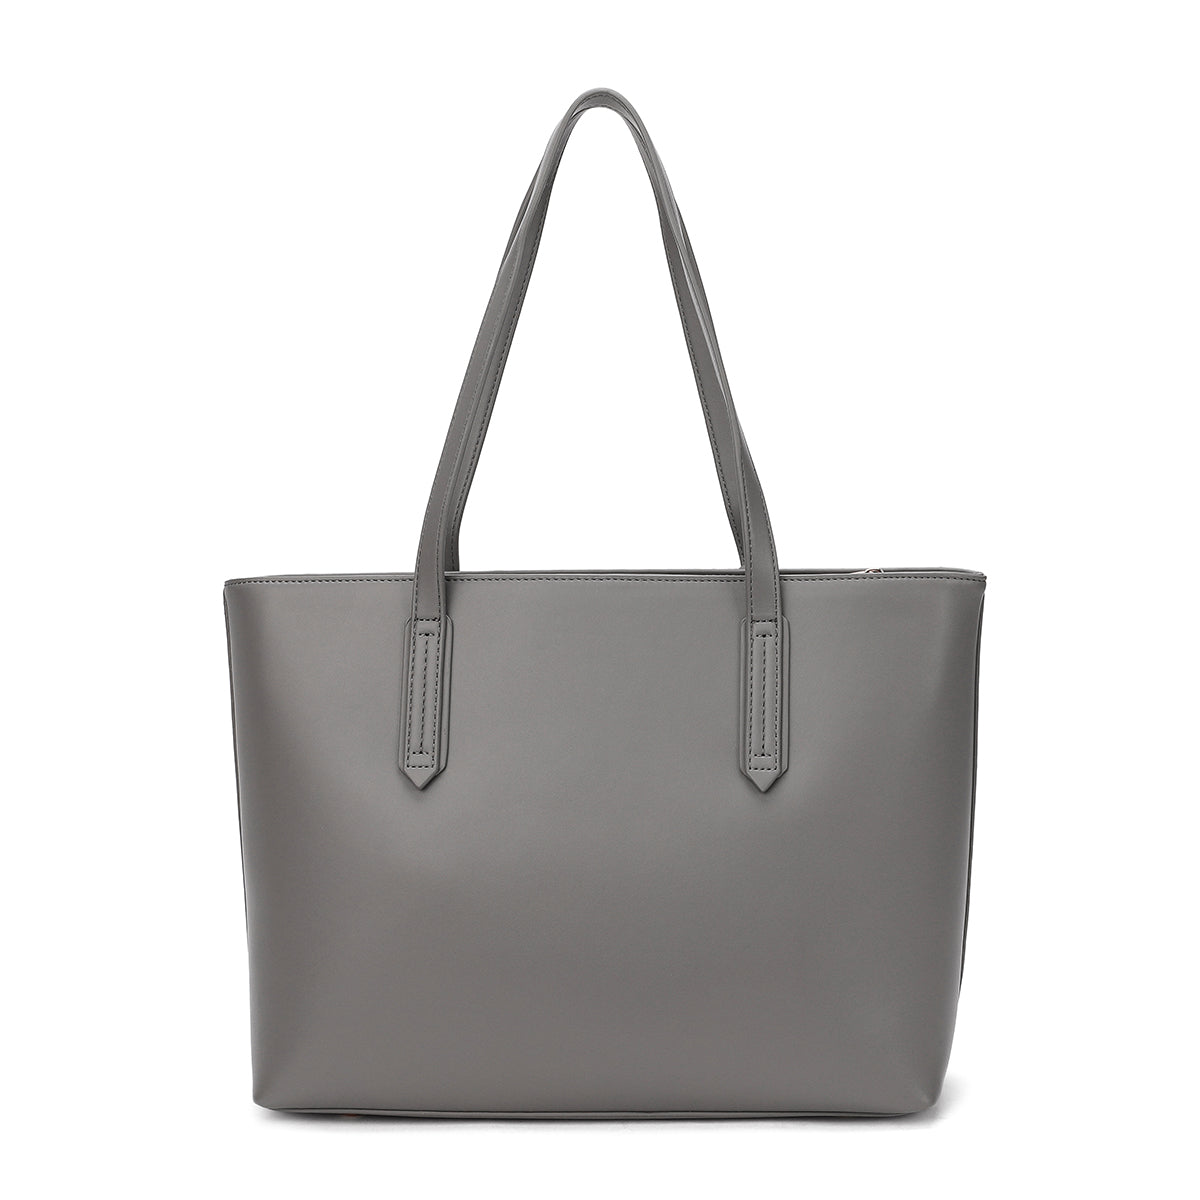 Simple and elegant design bag, 32 cm wide, three colors